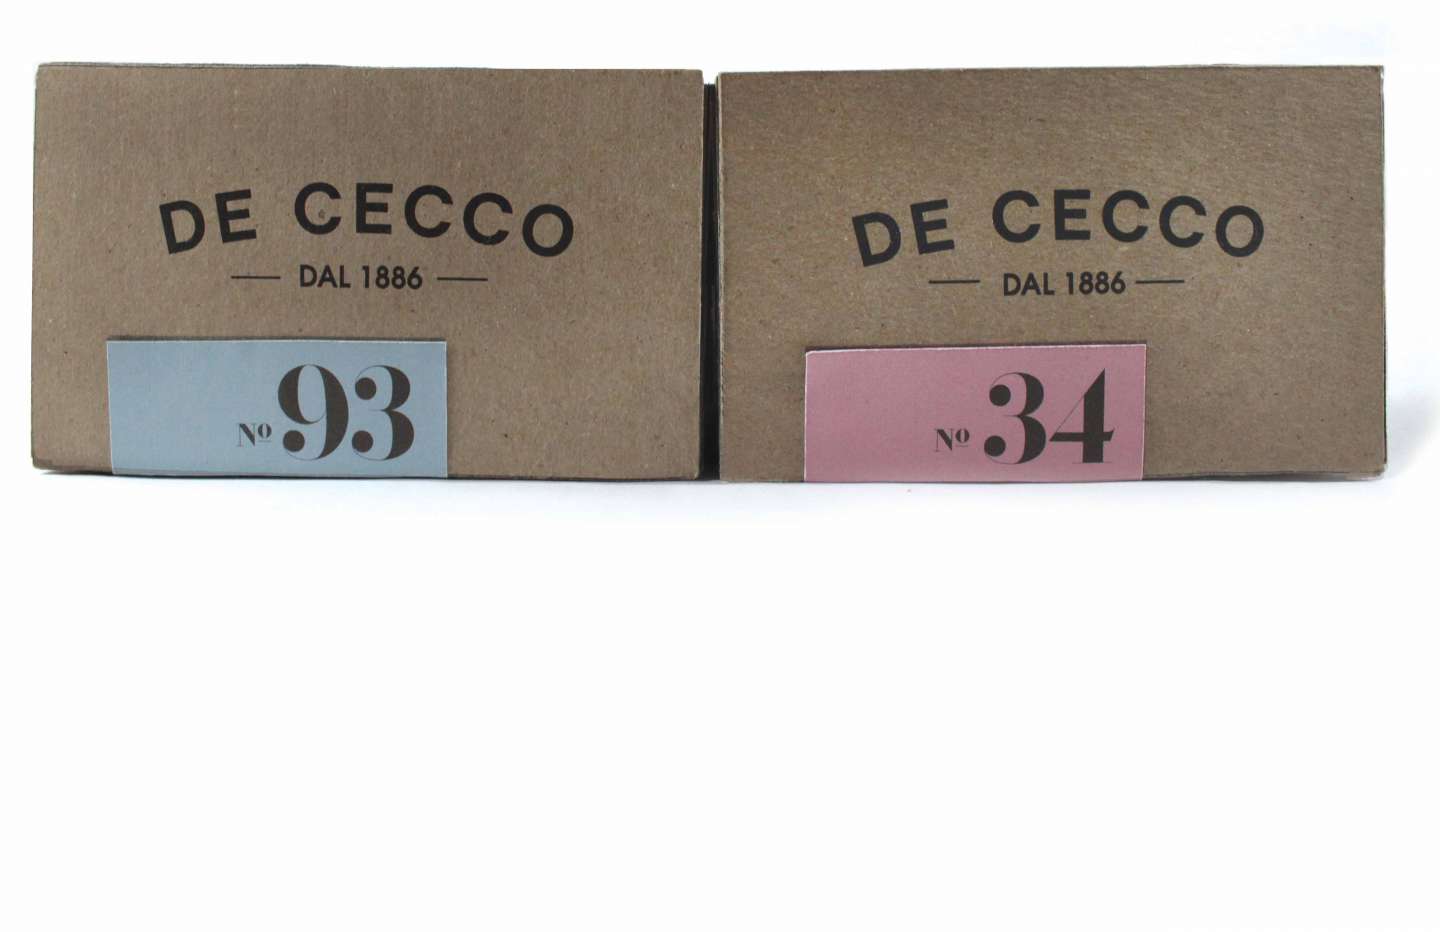 De Cecco Packaging